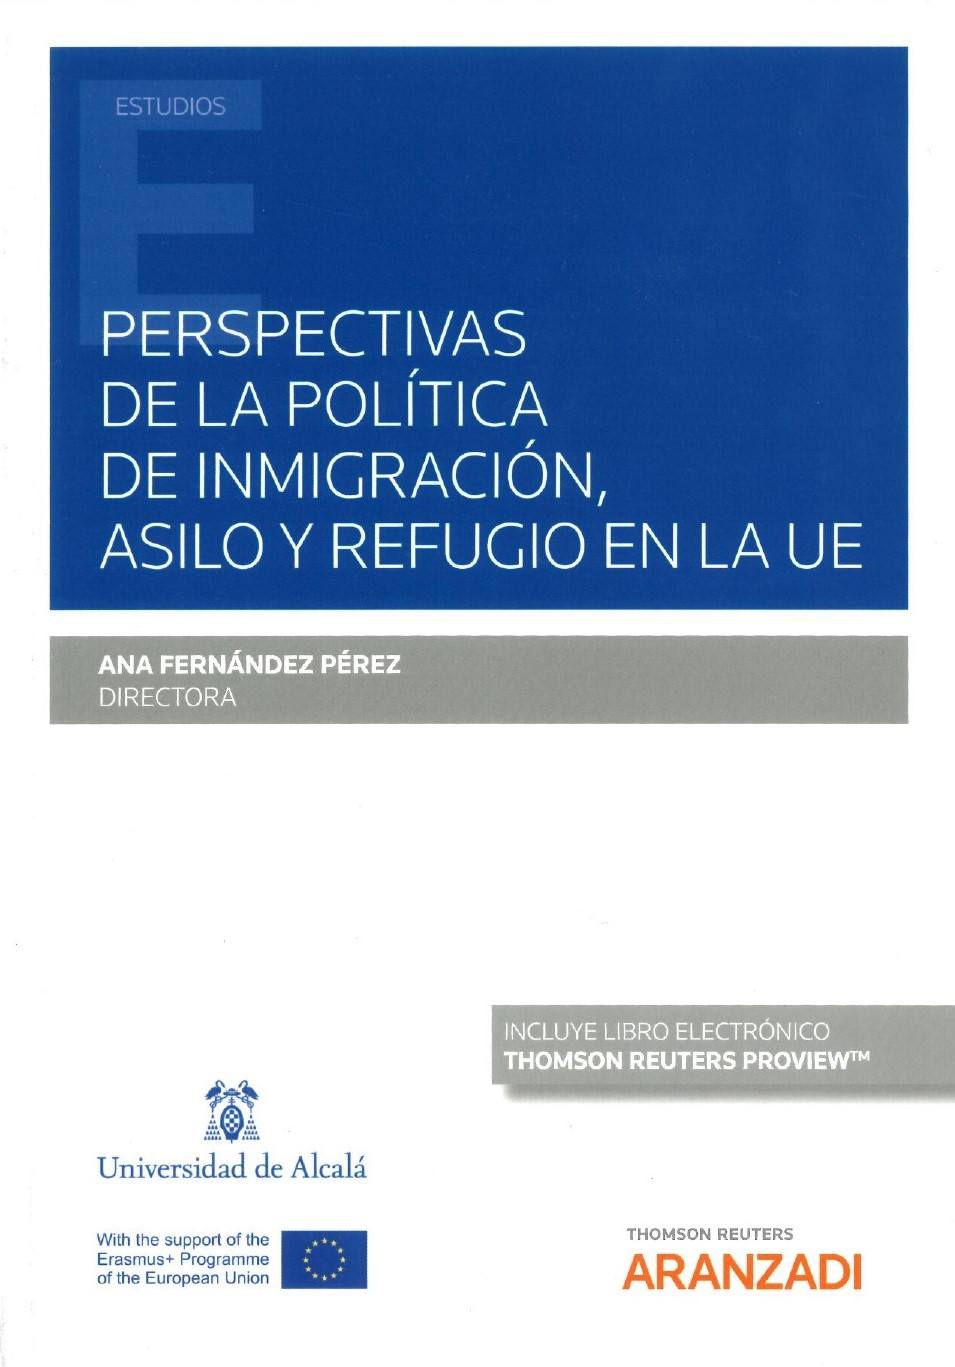 Imagen de portada del libro Perspectivas de la política de inmigración, asilo y refugio en la Unión Europea